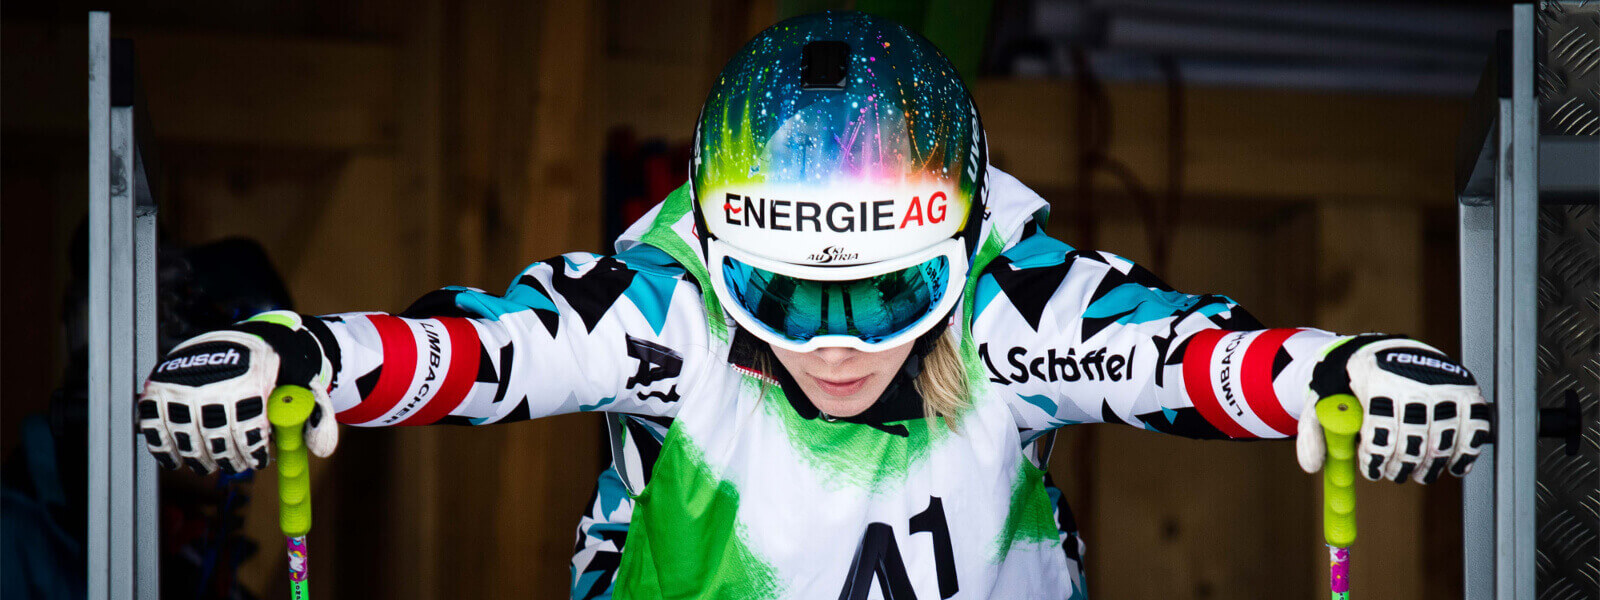 Il pilota di sci austriaco Andrea Limbacher nella casa di partenza di Ski Cross sembra concentrato